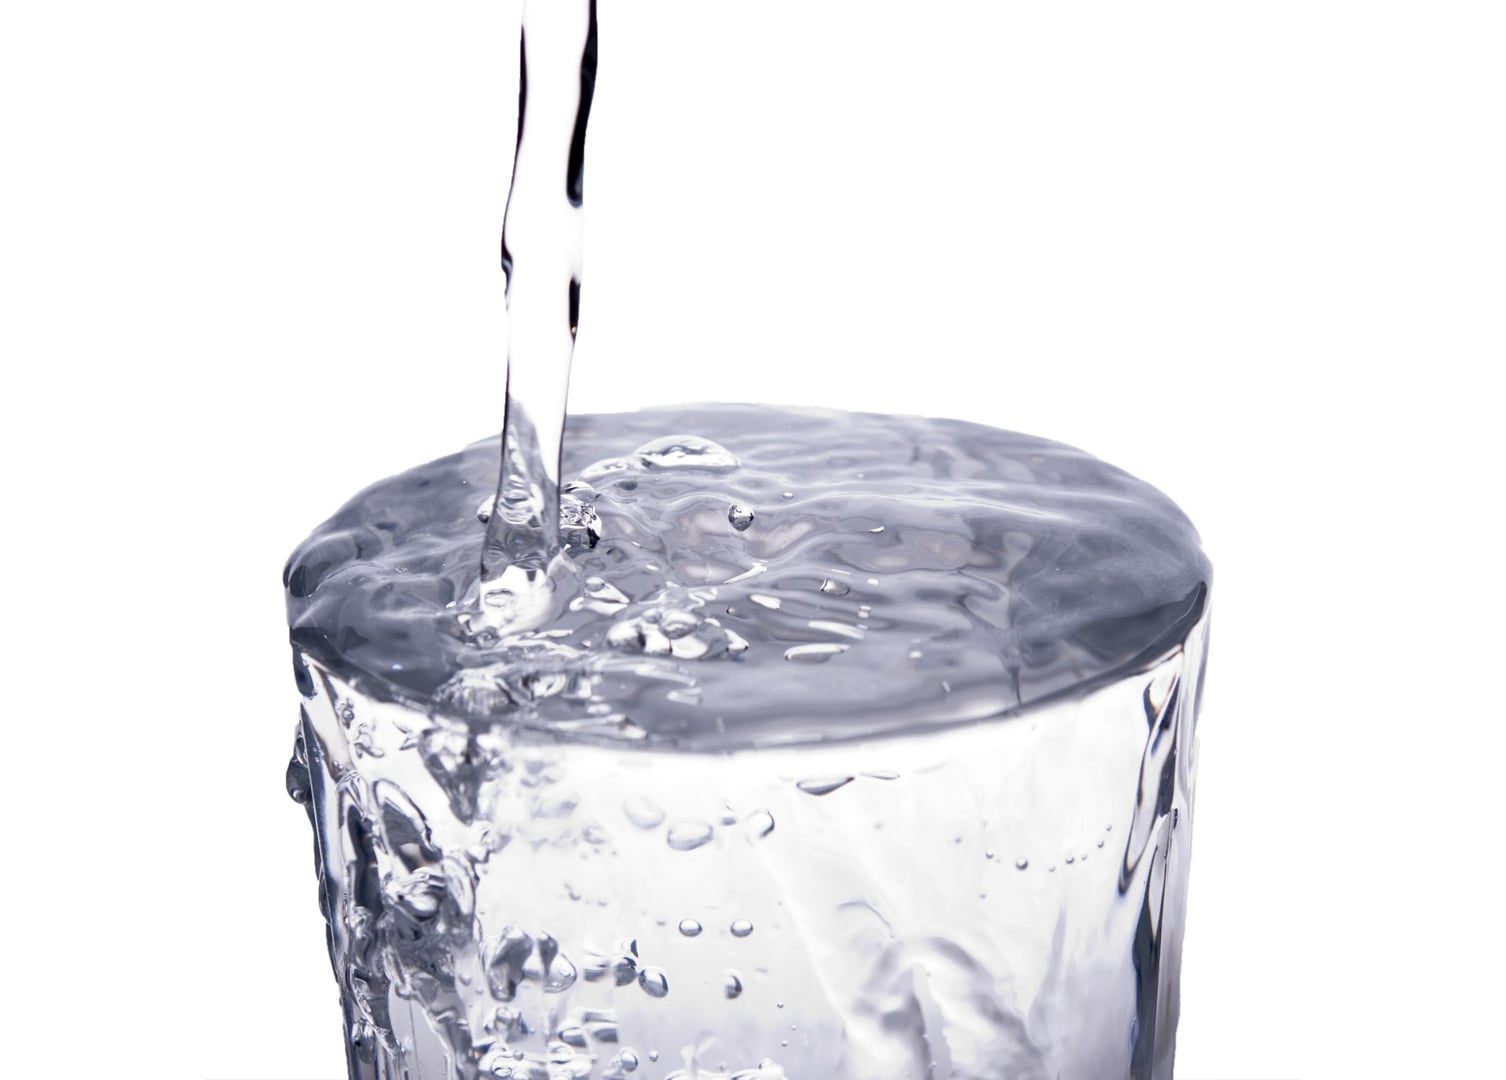 В стакан до краев налита вода. Переполненный стакан. Переполненный стакан с водой. Вода через край. Вода льется через край.